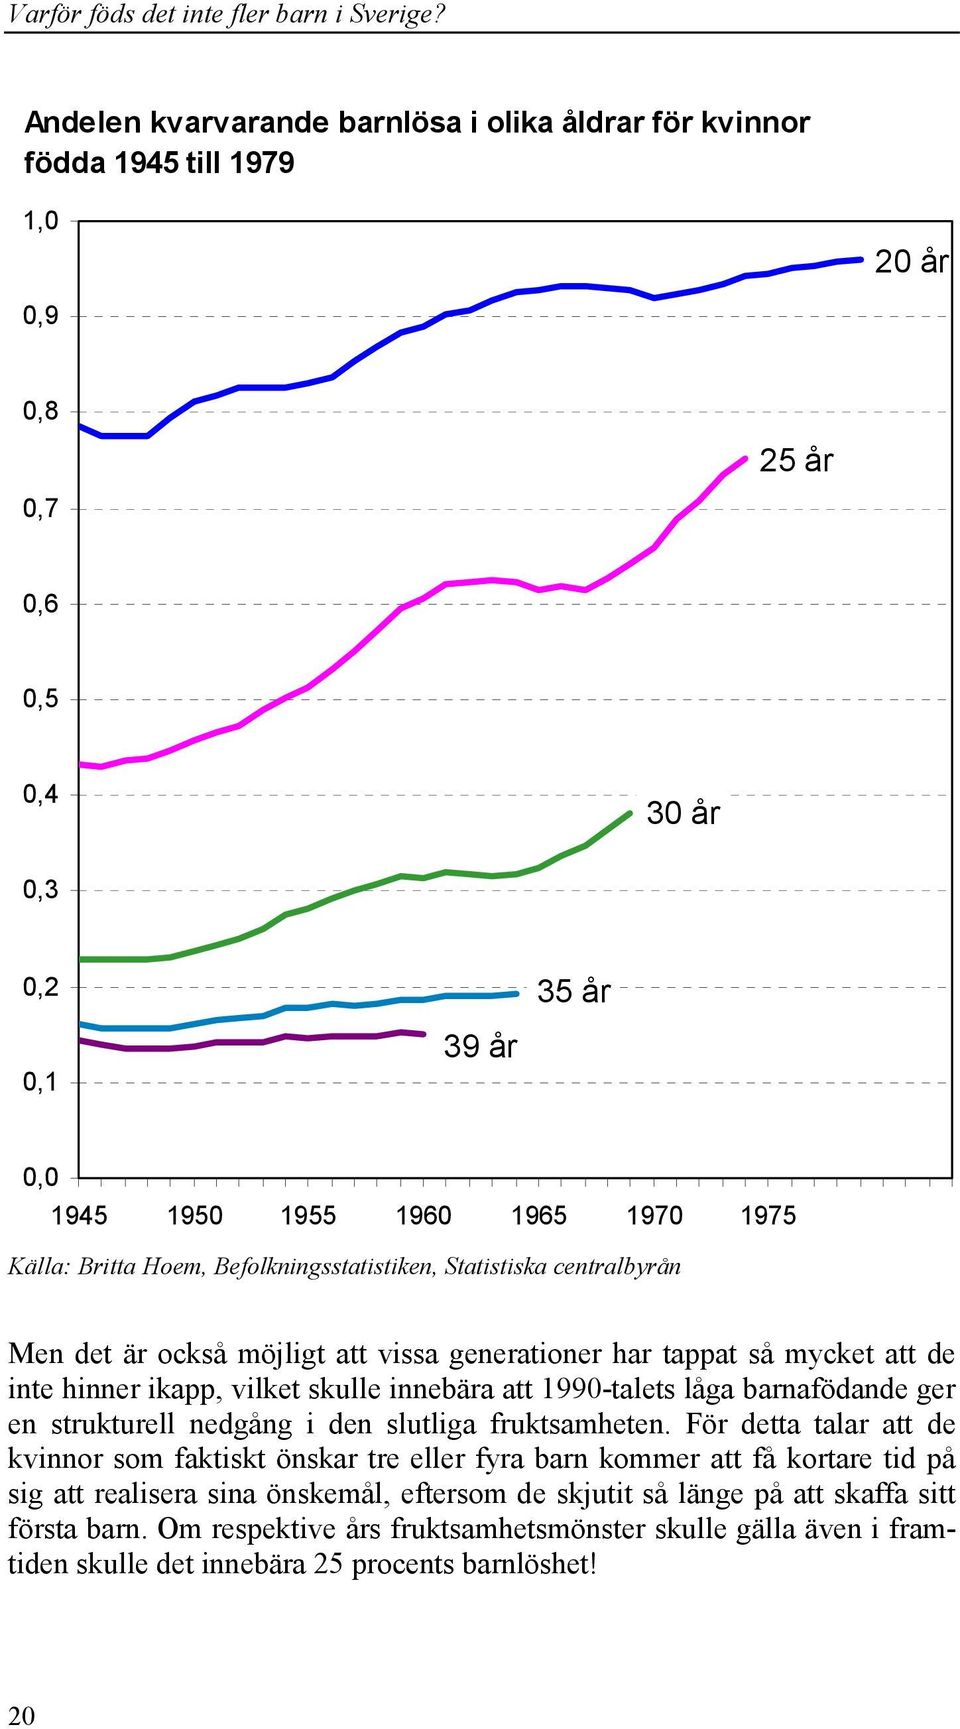 1990-talets låga barnafödande ger en strukturell nedgång i den slutliga fruktsamheten.